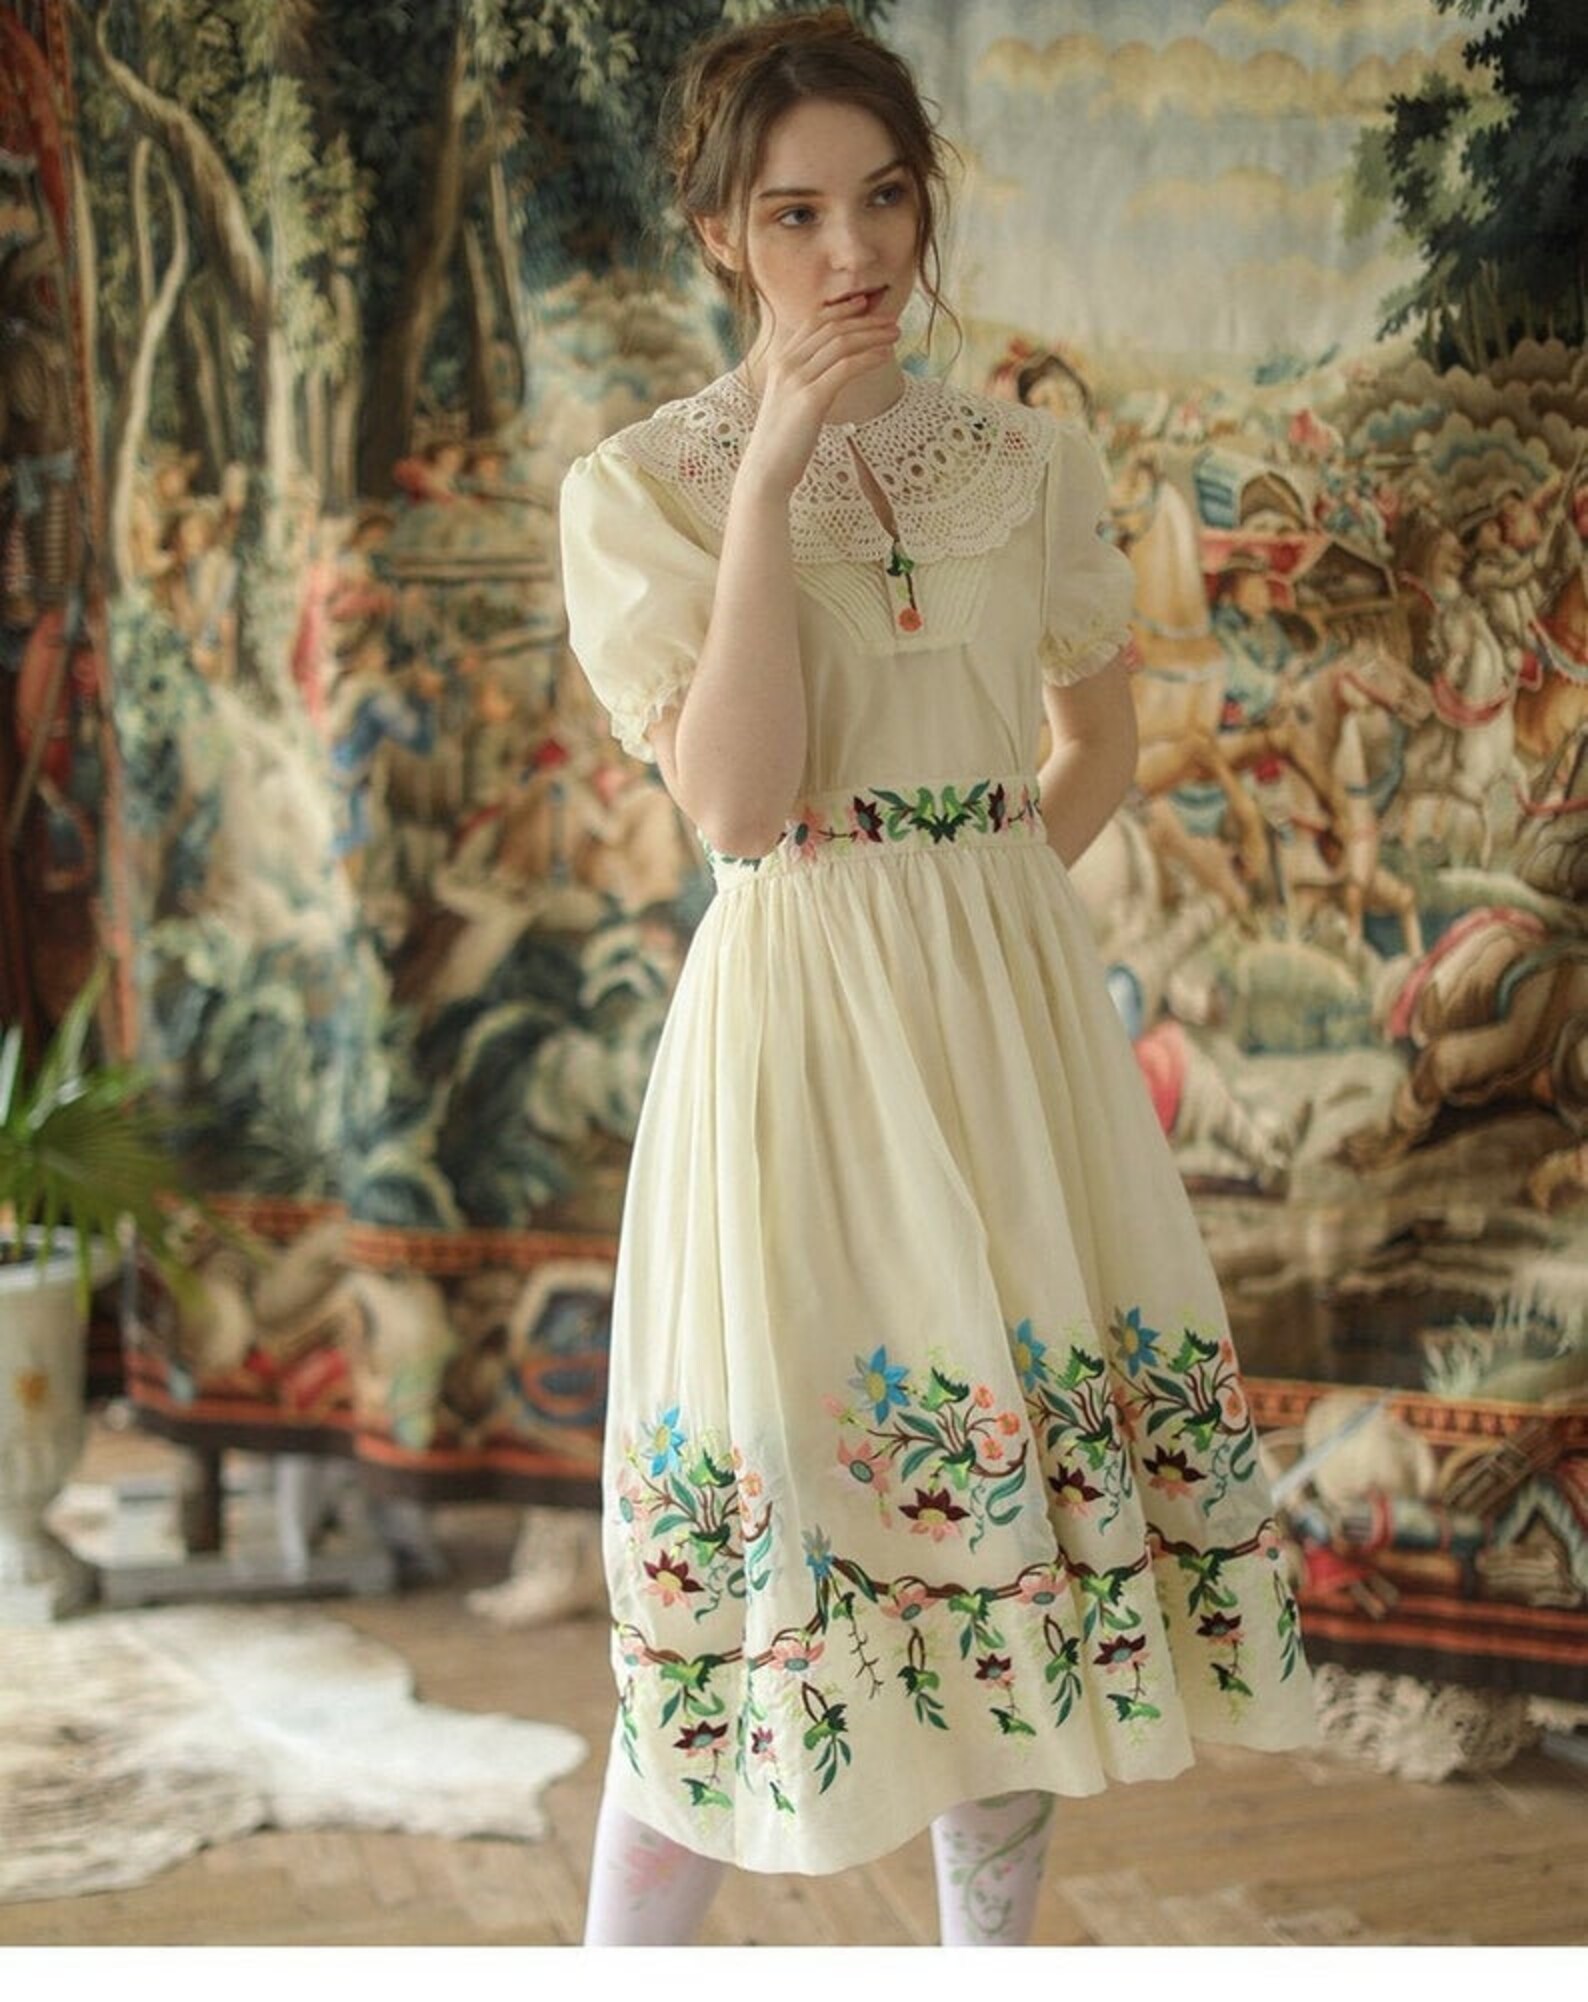 Sweet Princess Apricot Color Dress / fairy dress / enaissance | Etsy